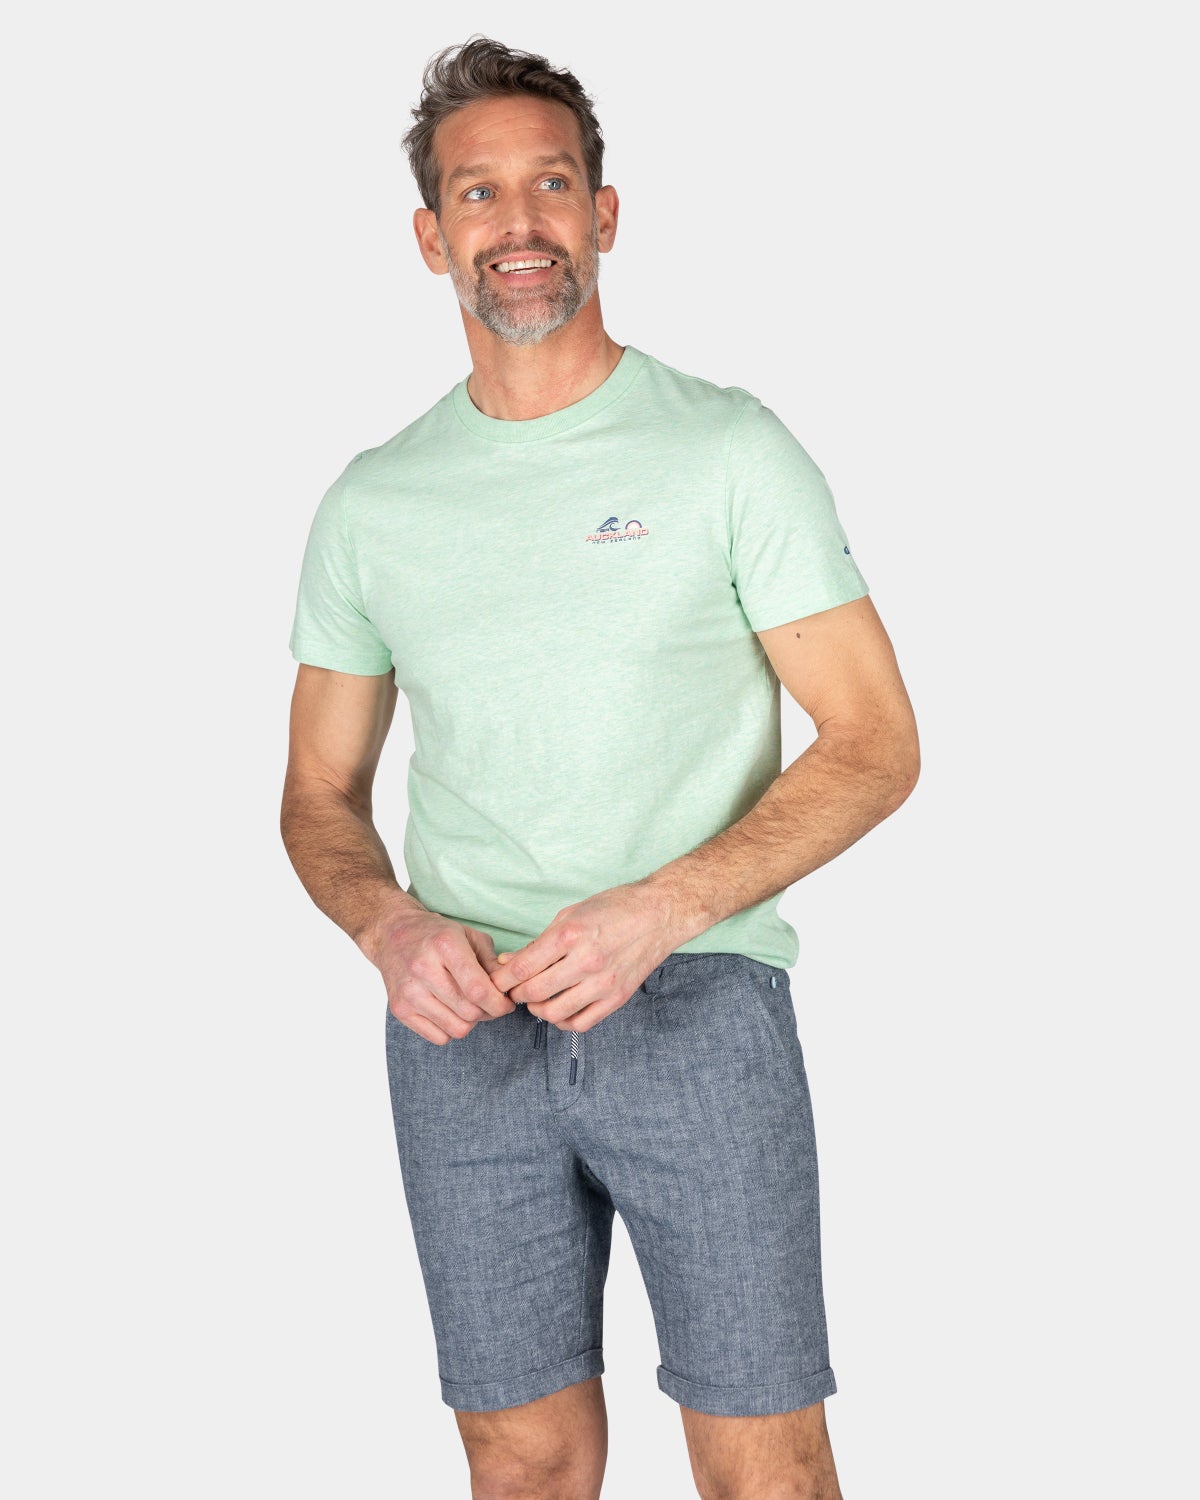 Plain cotton t-shirt - Teal Green